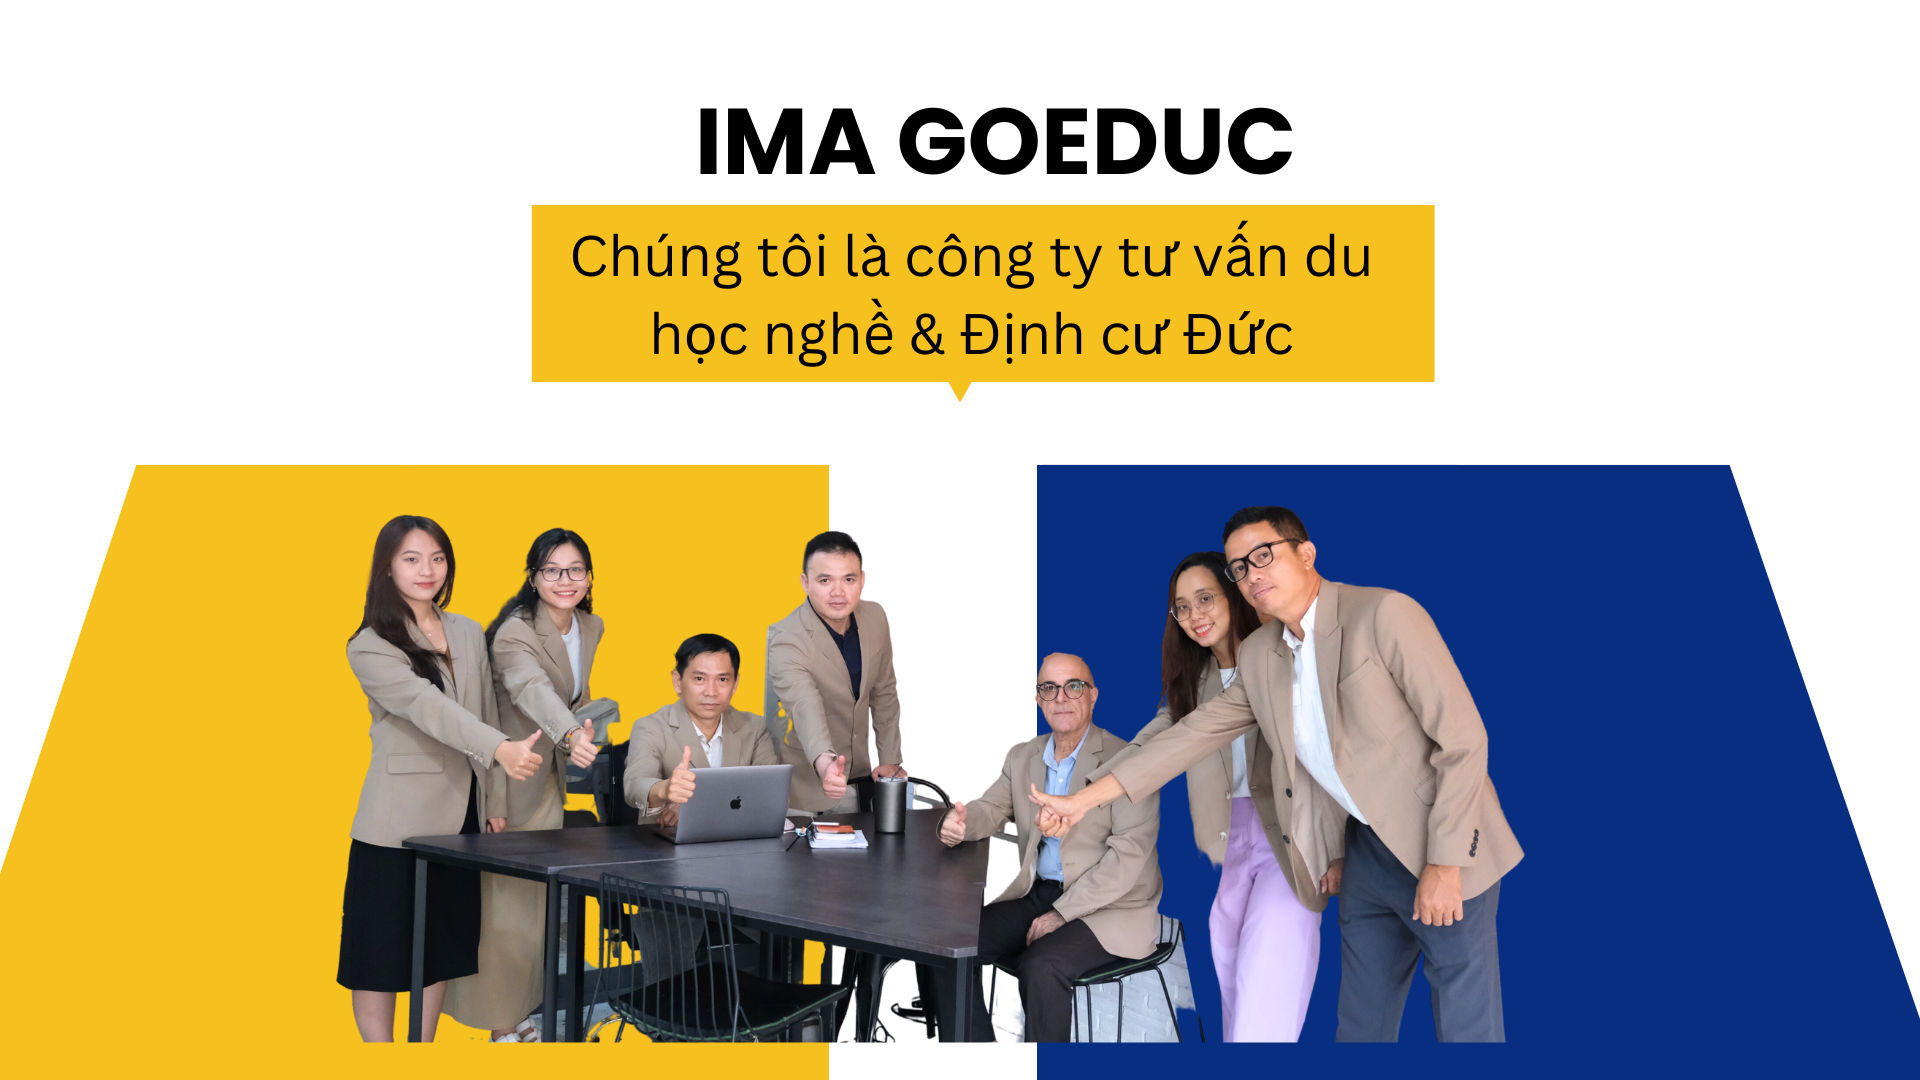 IMA Goeduc - công ty tư vấn du học nghề uy tín